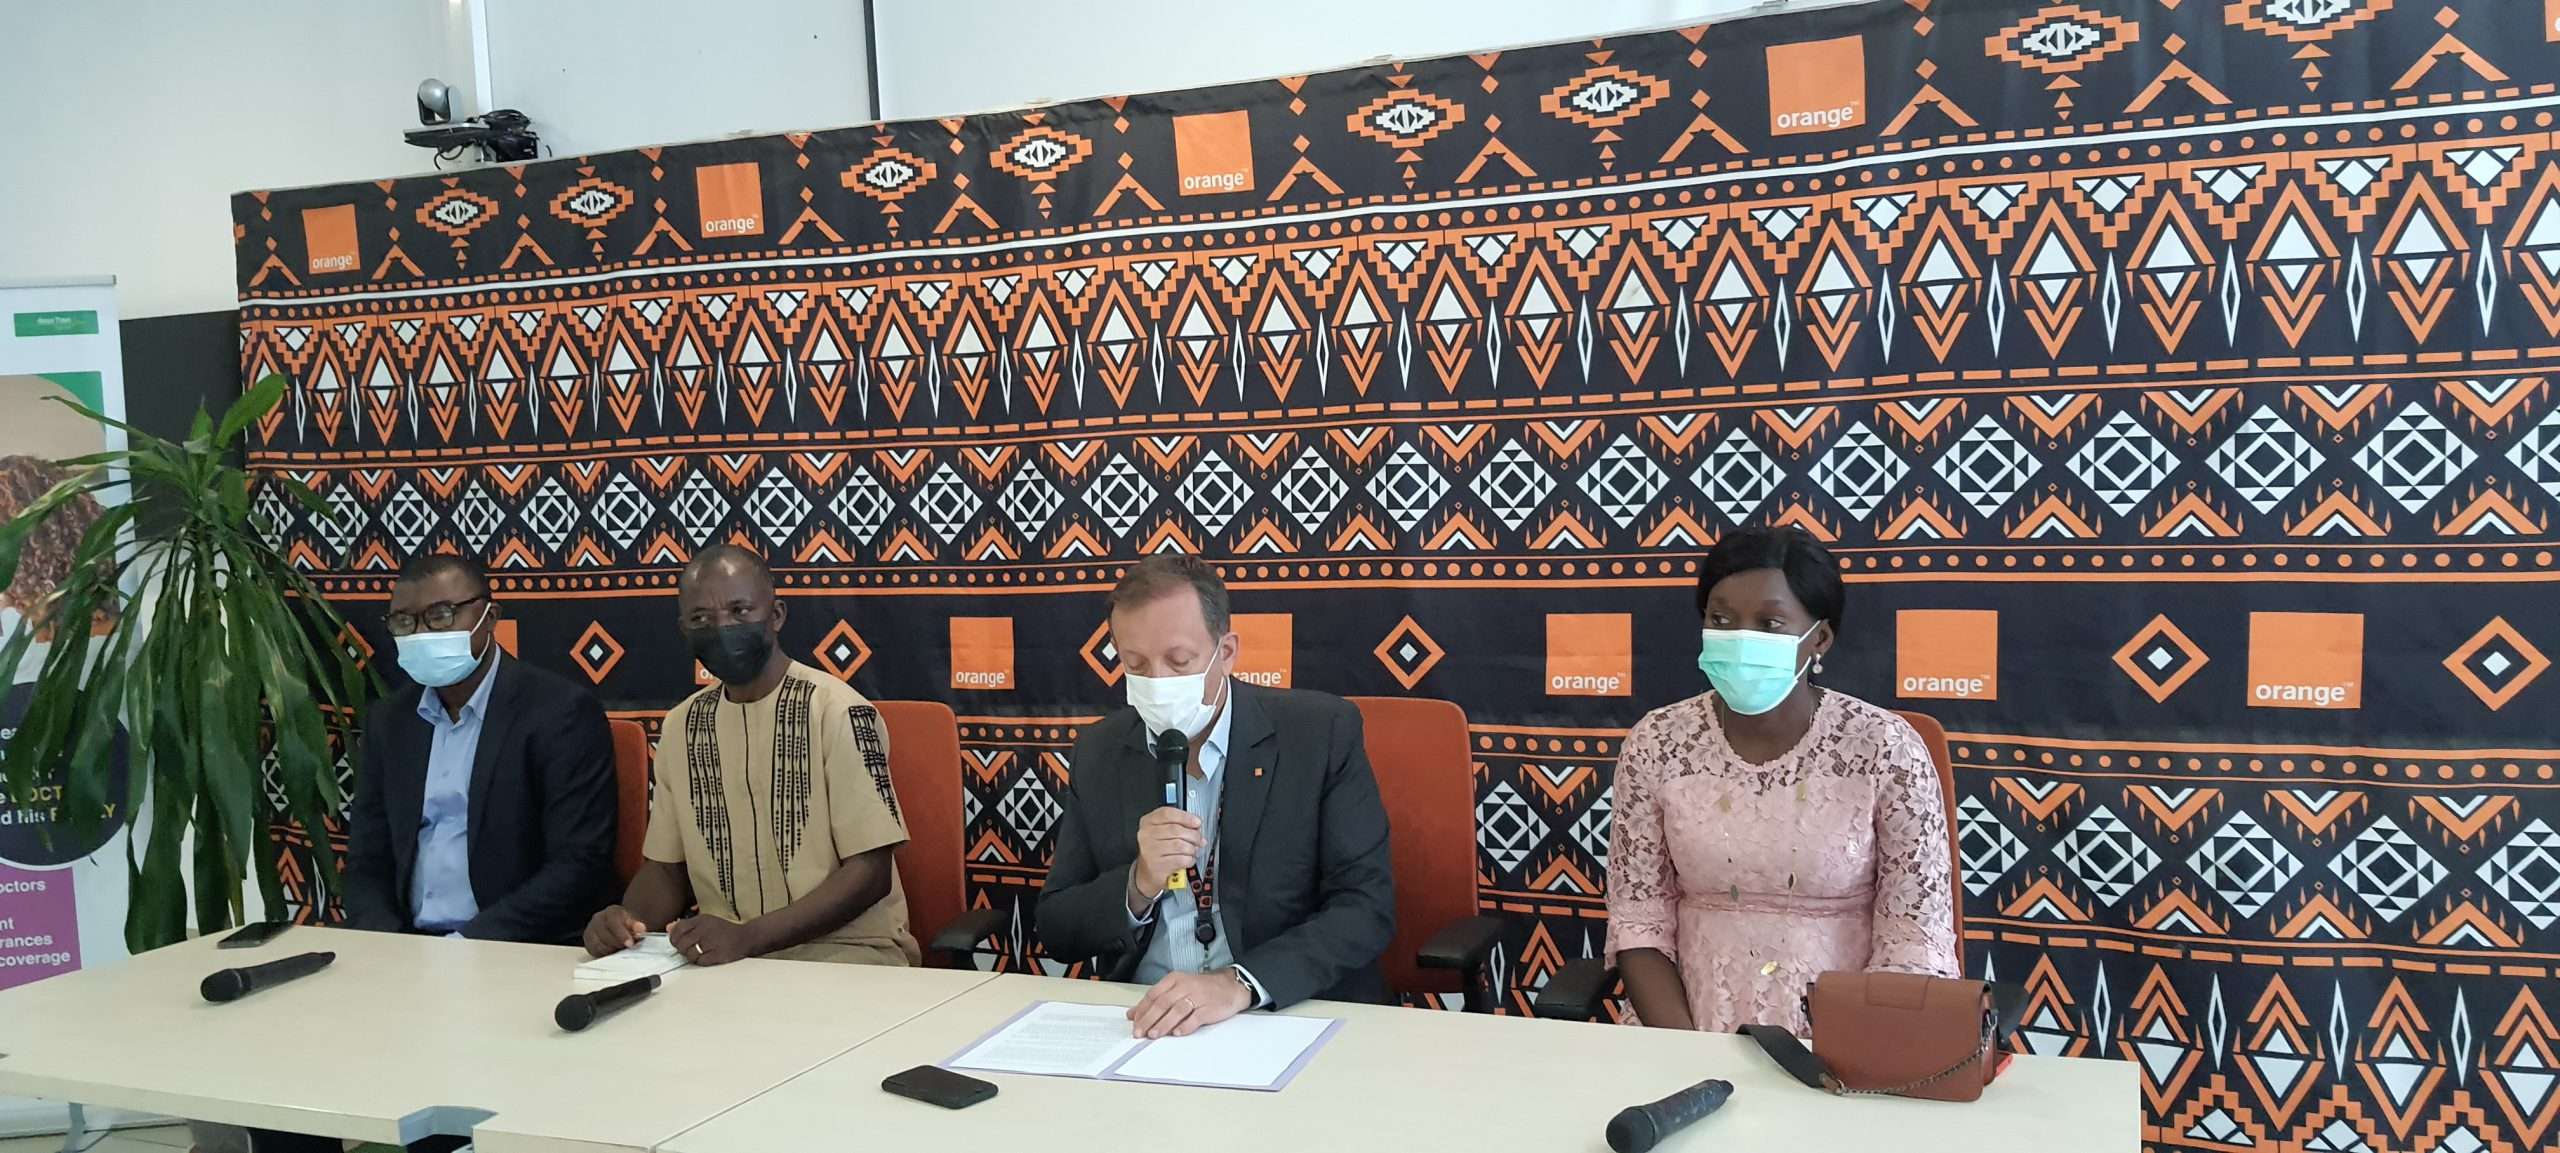 Journée mondiale de la liberté de presse : Orange Cameroun et Atlantique Assurances offrent une police d’assurance santé d’un an à 50 journalistes